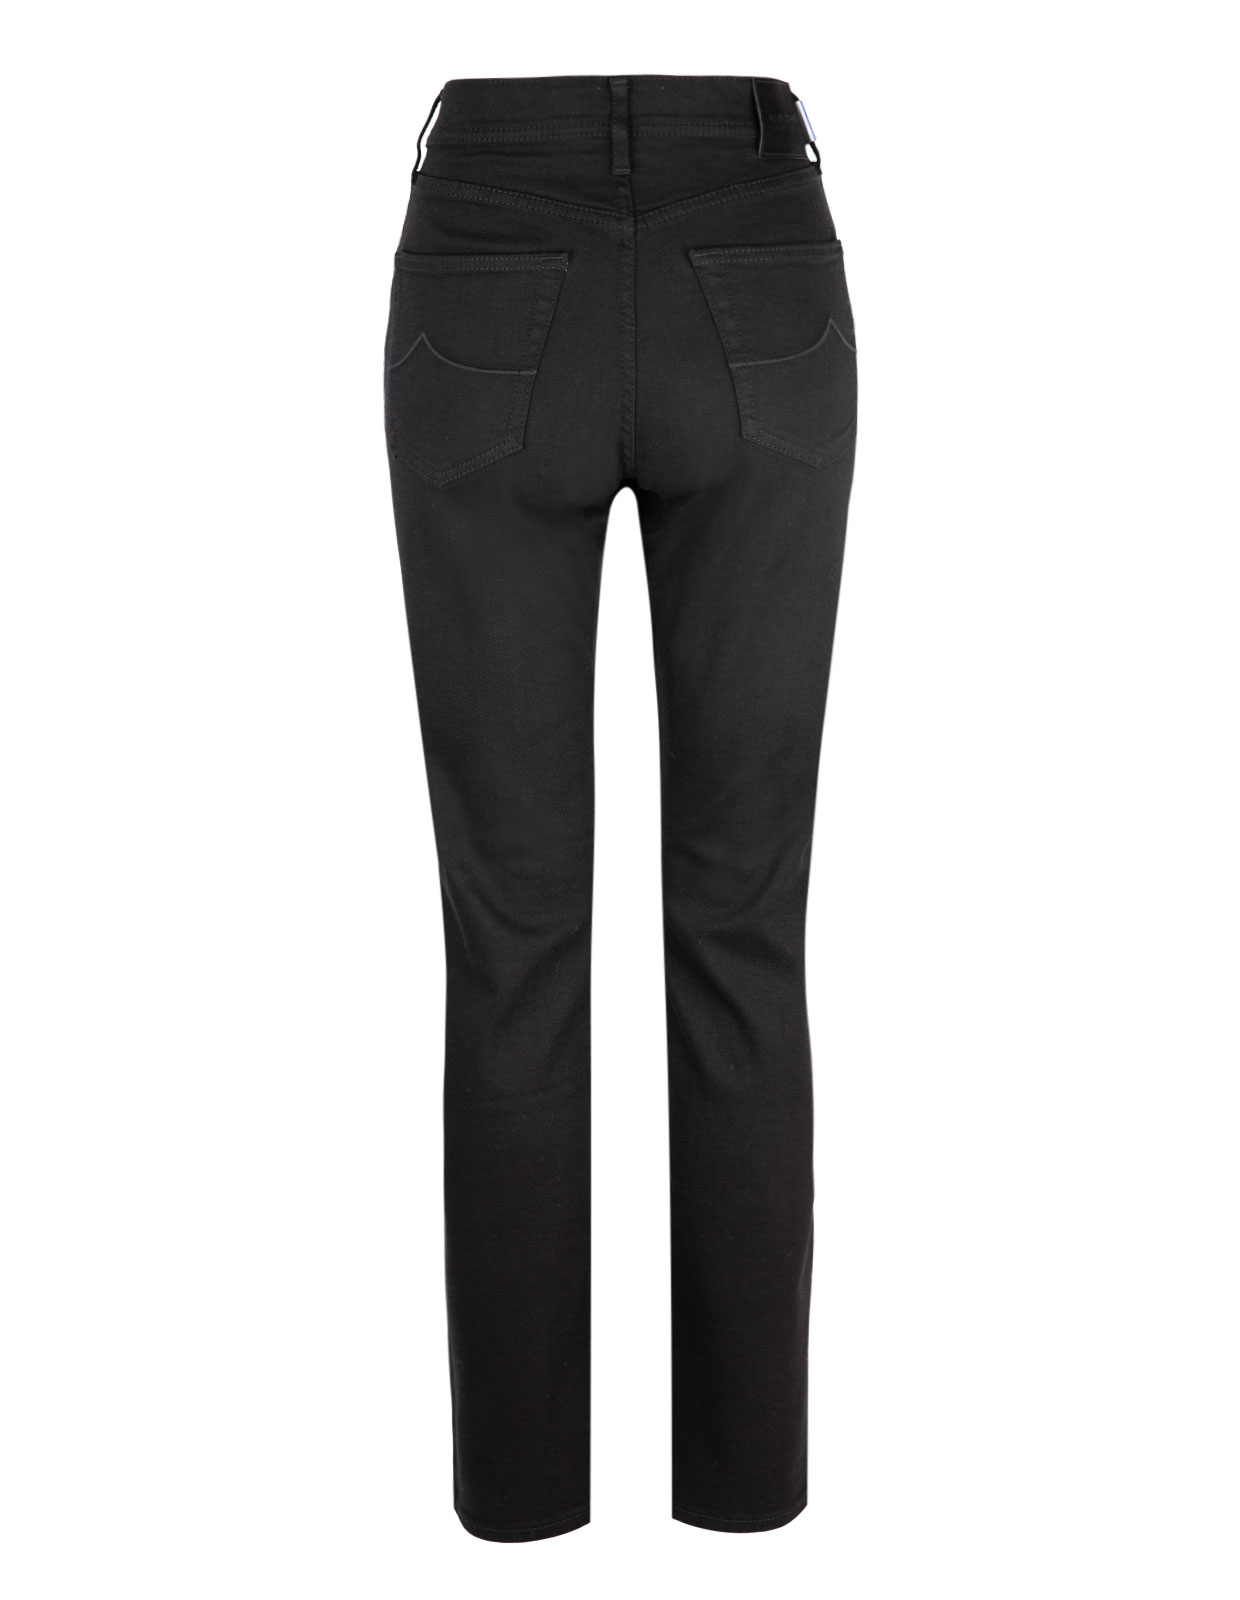 Olivia Slim Fit 5 Pocket Jeans Black